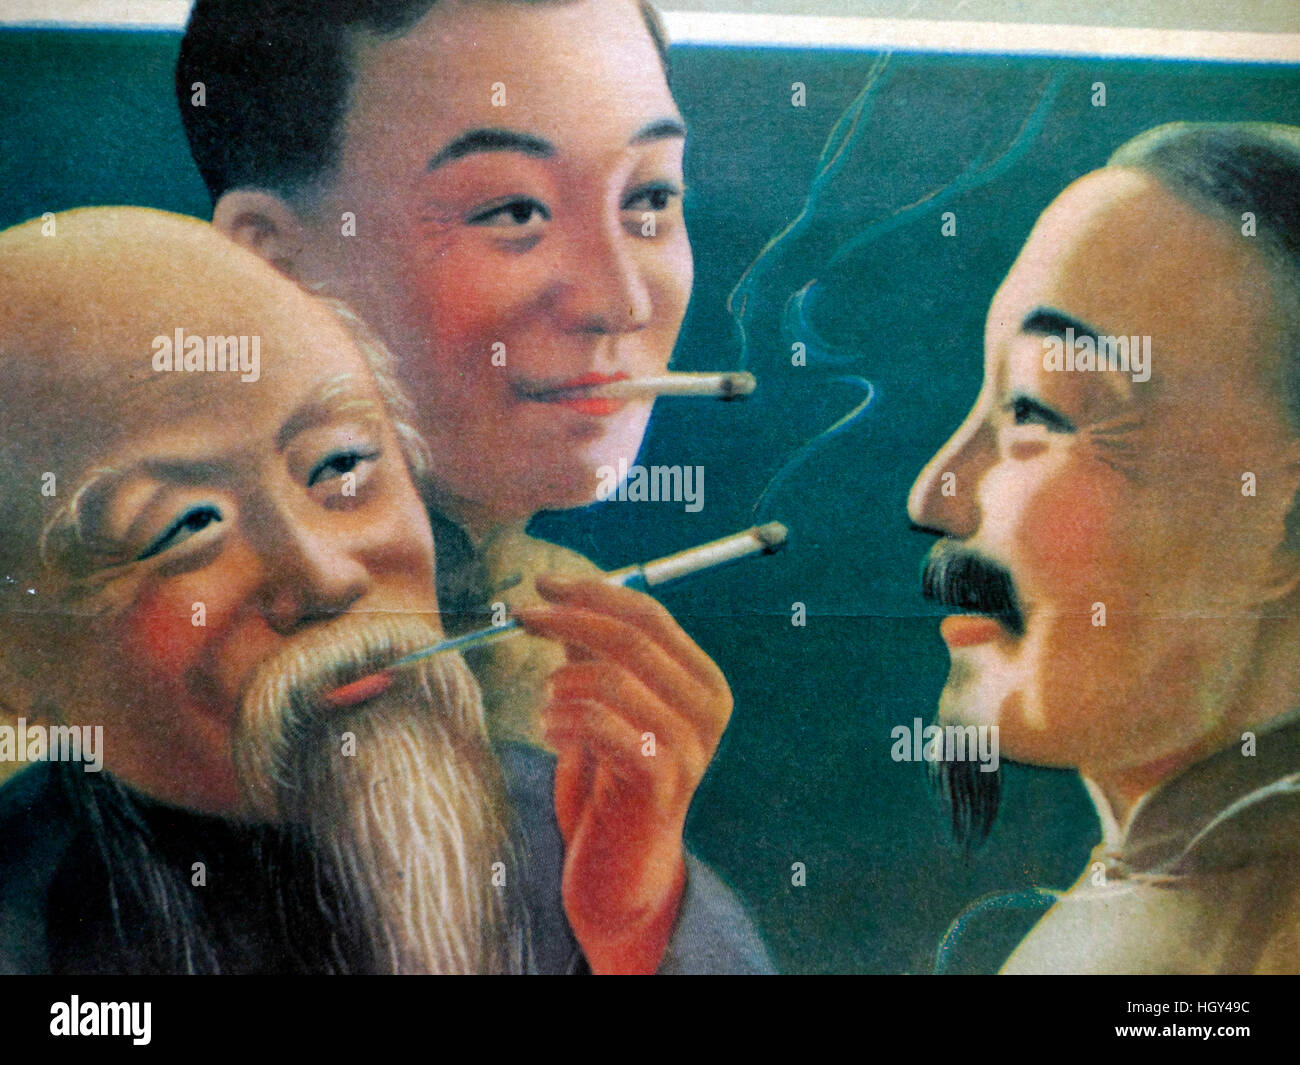 Póster de cigarrillos chinos nostálgico Foto de stock